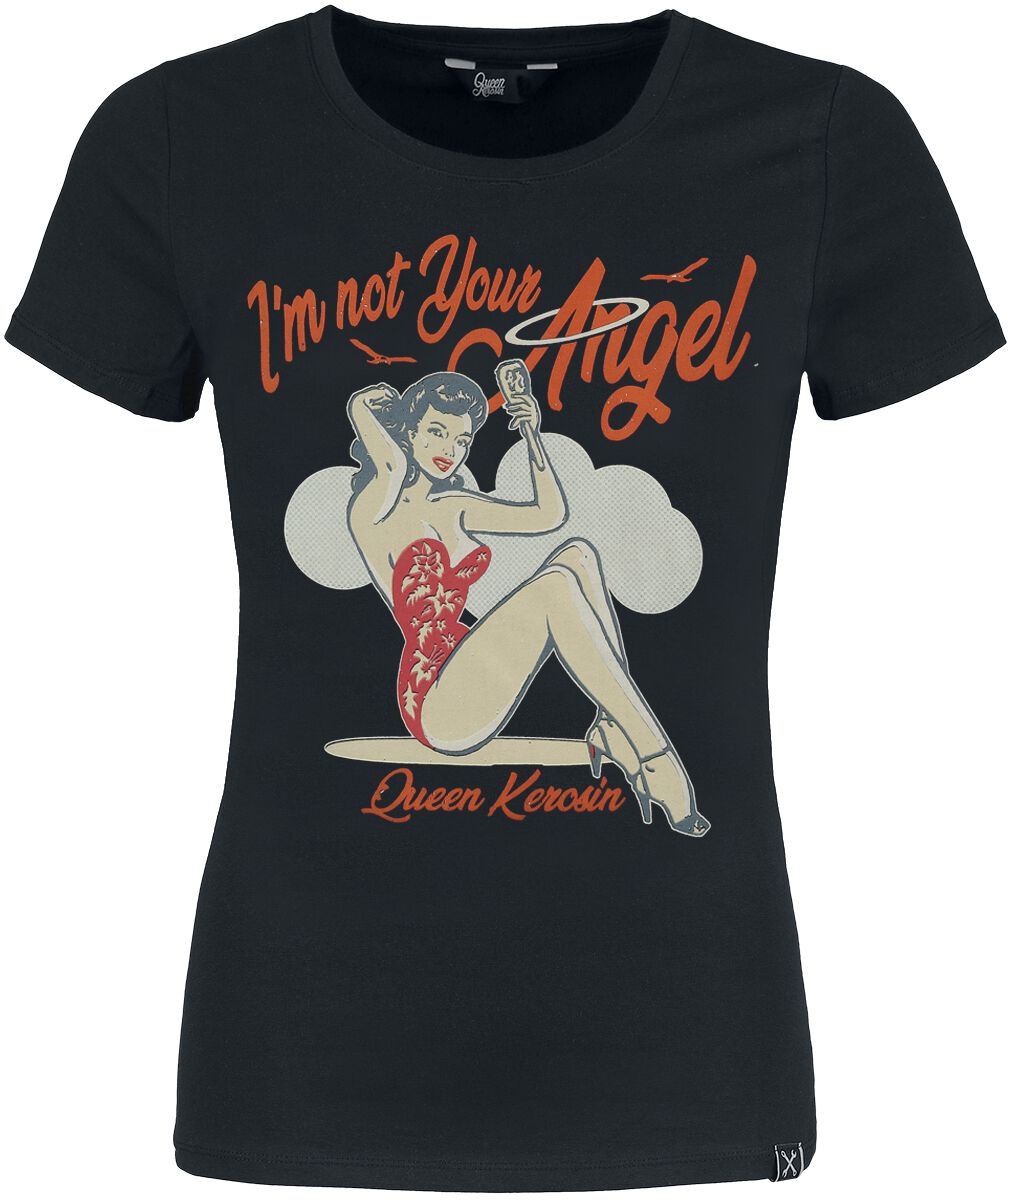 T-Shirt Manches courtes Rockabilly de Queen Kerosin - I'm Not Your Angel - XS à XXL - pour Femme - n